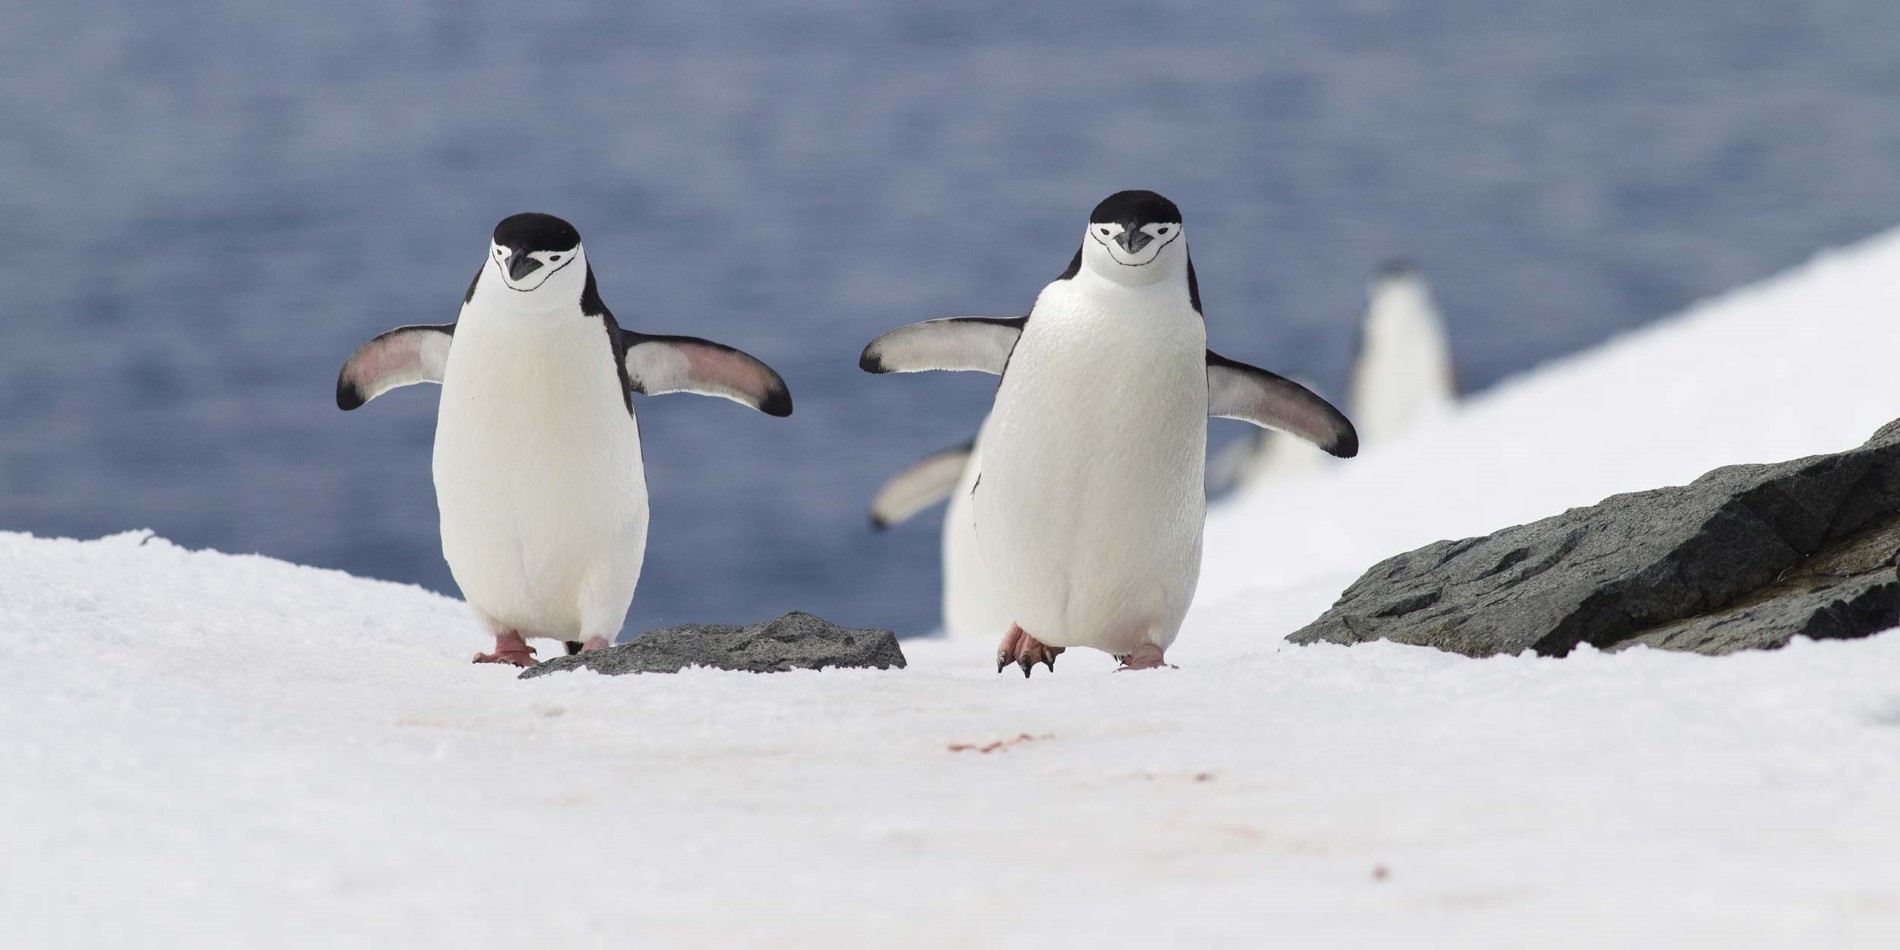 Enjoy meeting penguins in Antarctica